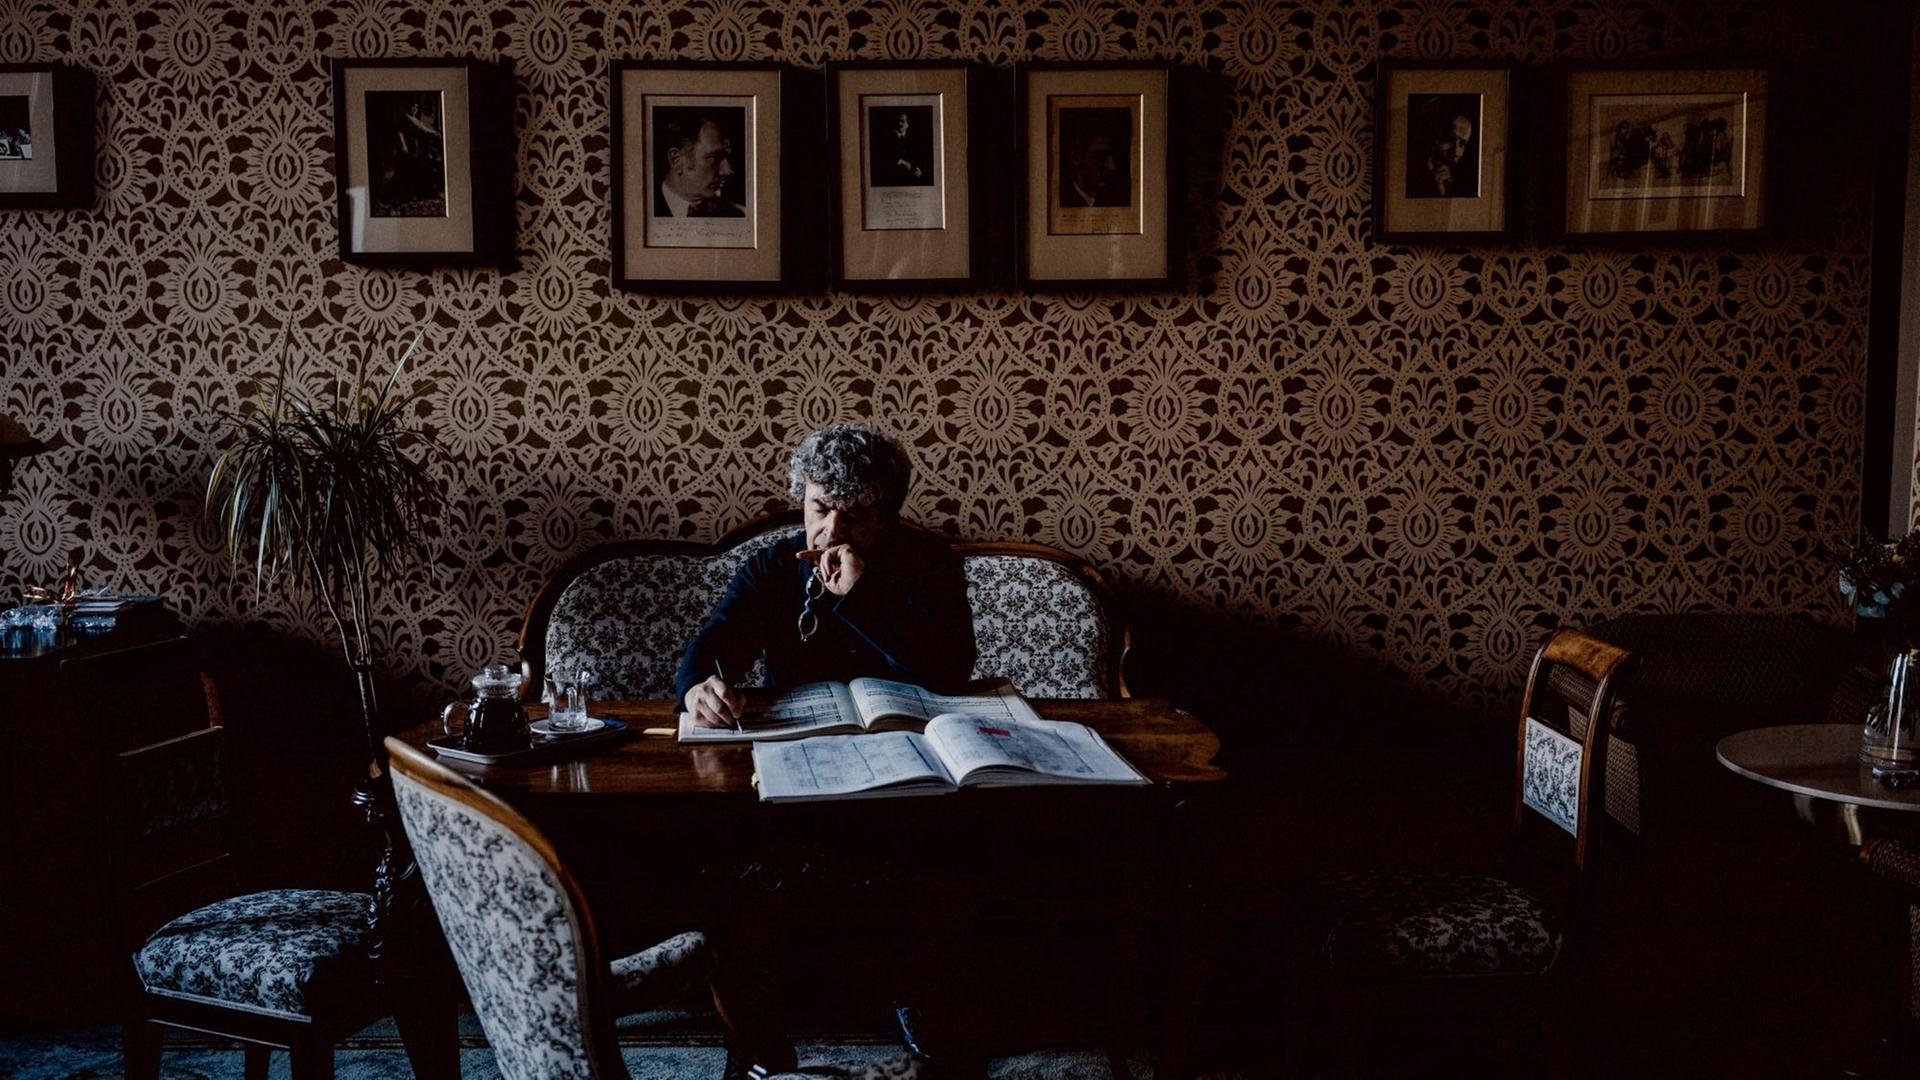 Semyon Bychkov sitzt auf einer antiken Couch, vor sich ein Tisch mit einer Partitur, in die er Notizen schreibt